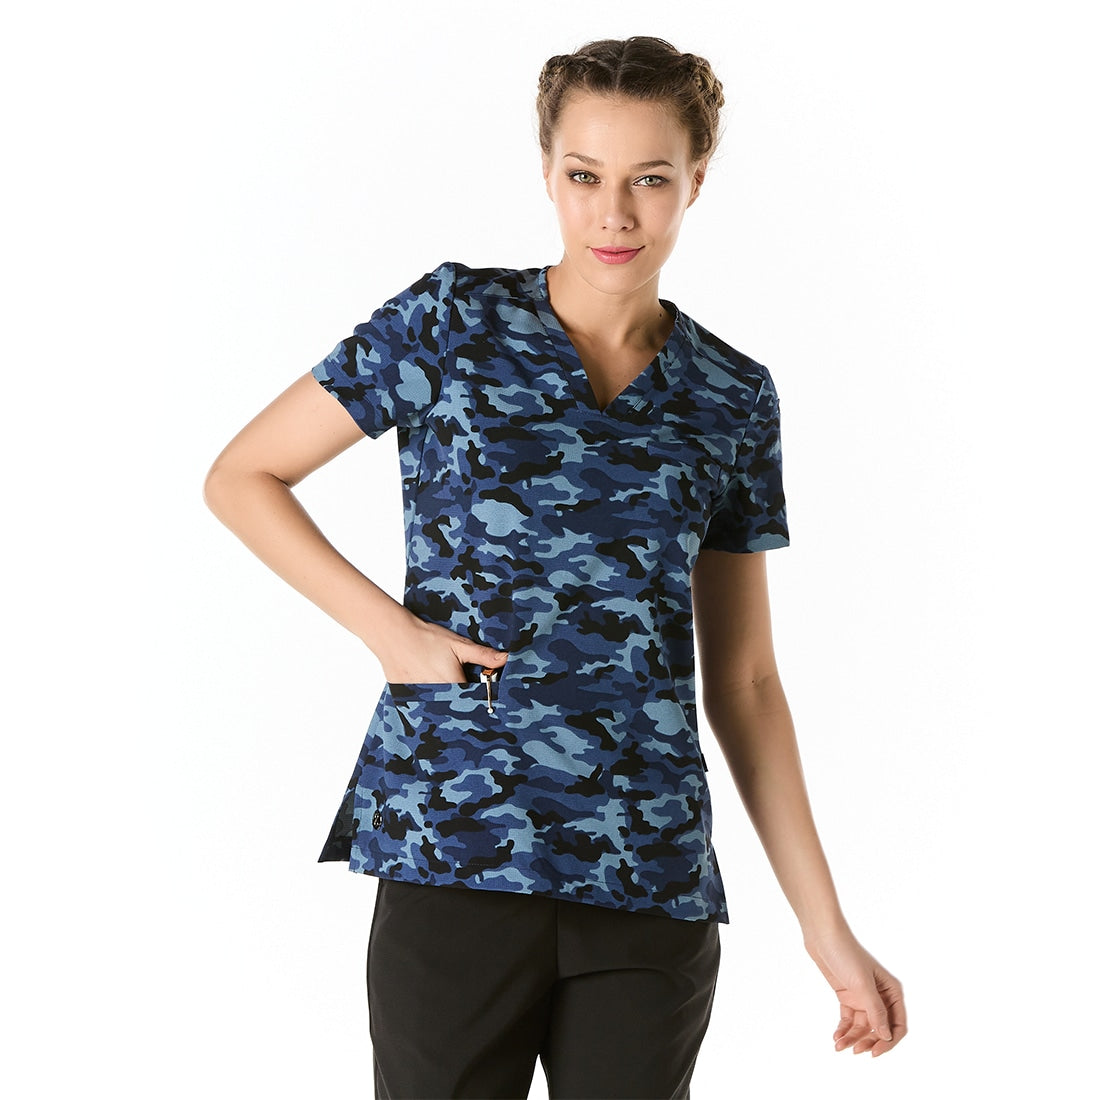 Mujer vistiendo Casaca Sanitaria con estampado militar azul y cuello en V